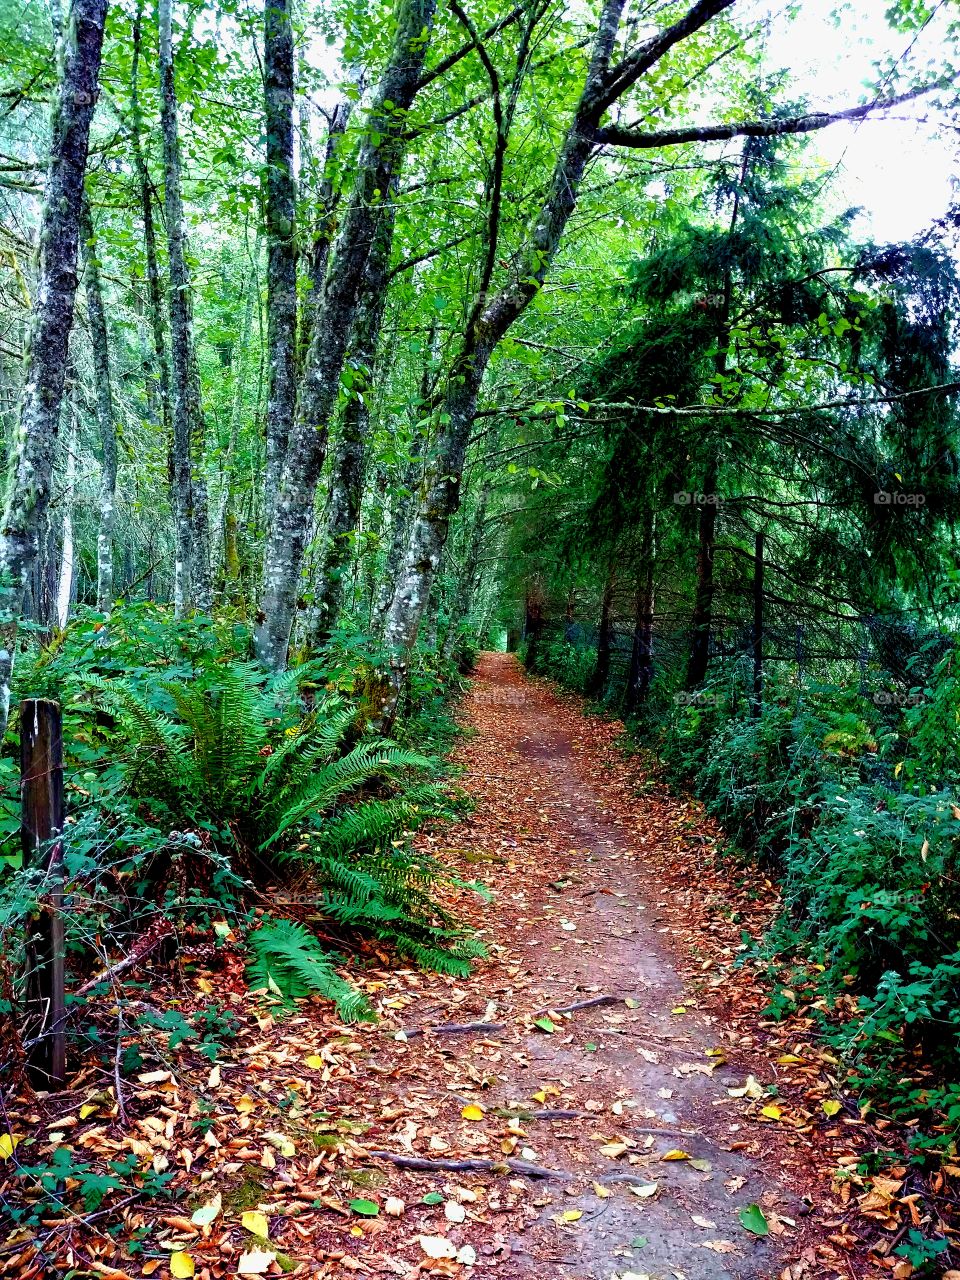 A pretty path through the woods